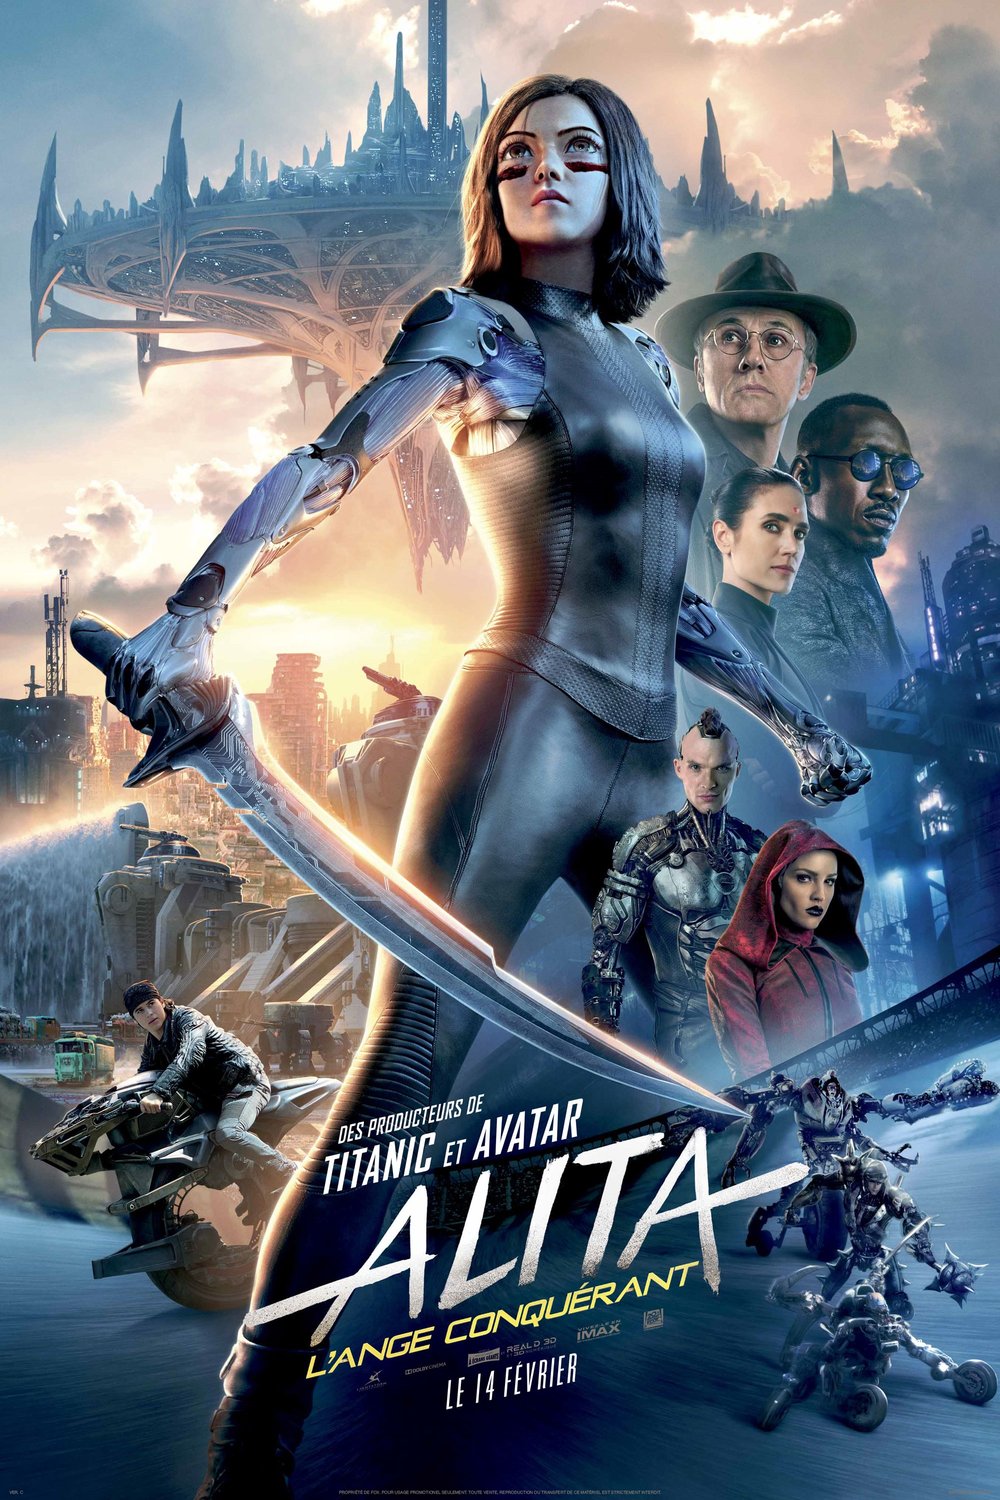 Poster of the movie Alita: L'ange conquérant